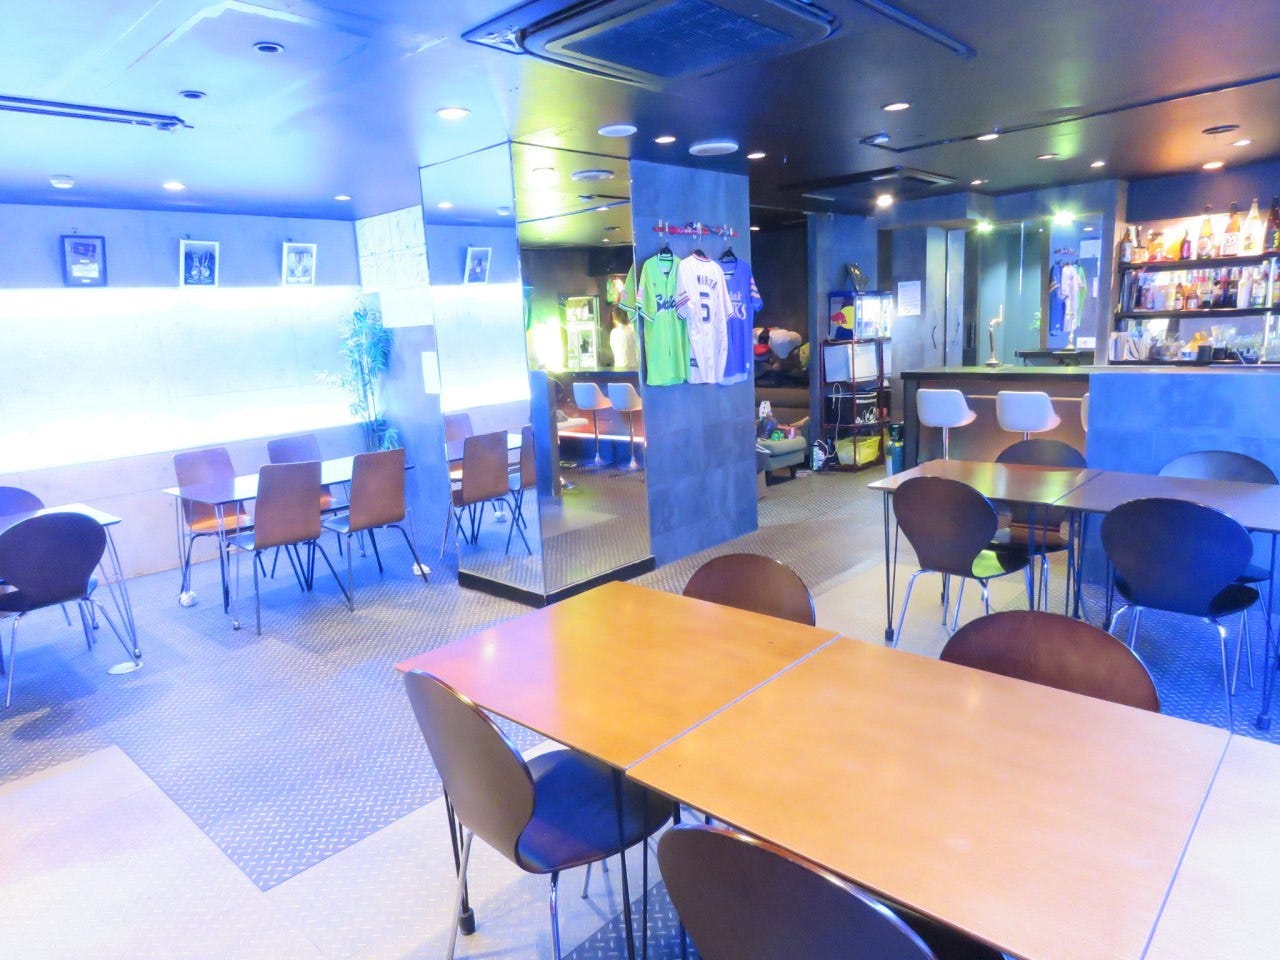 21年 最新グルメ 広島 カラオケができる女子会におすすめのお店 レストラン カフェ 居酒屋のネット予約 広島版